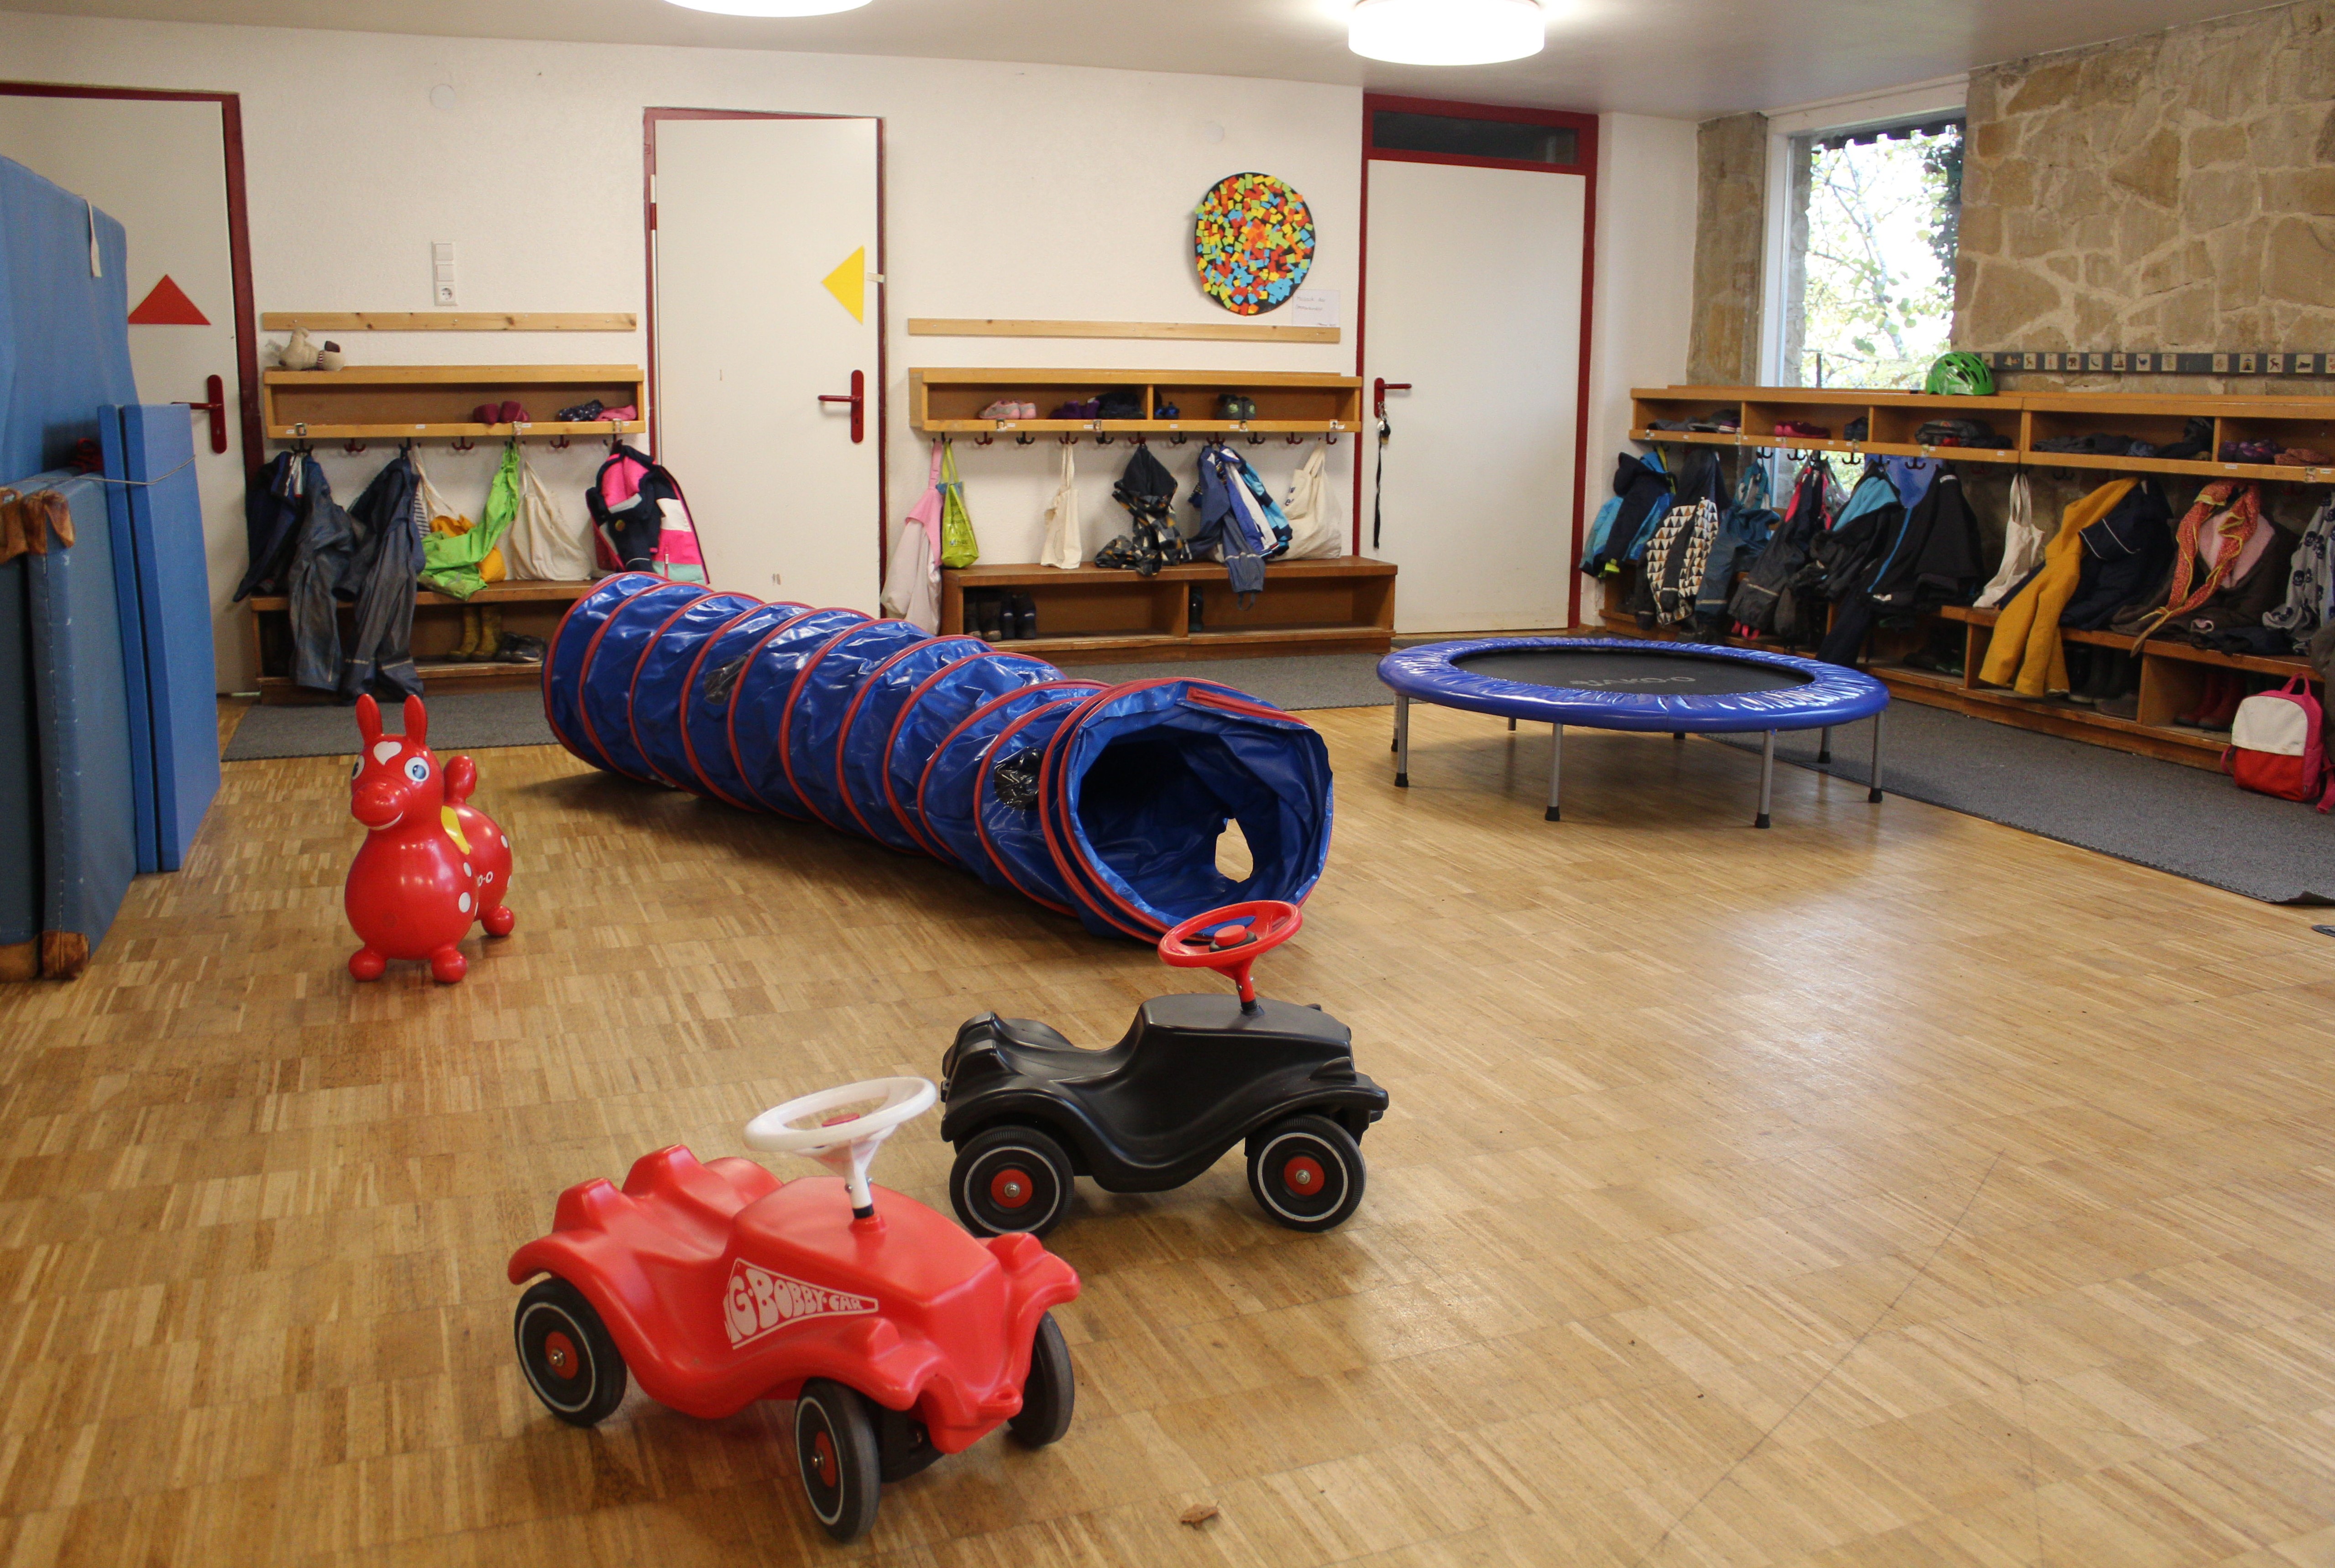 Auf dem Bild sind an den Wänden die Kindergarderoben angebracht, in der Mitte stehen zwei Bobby Cars, ein Trampolin und eine Tunnelröhre.